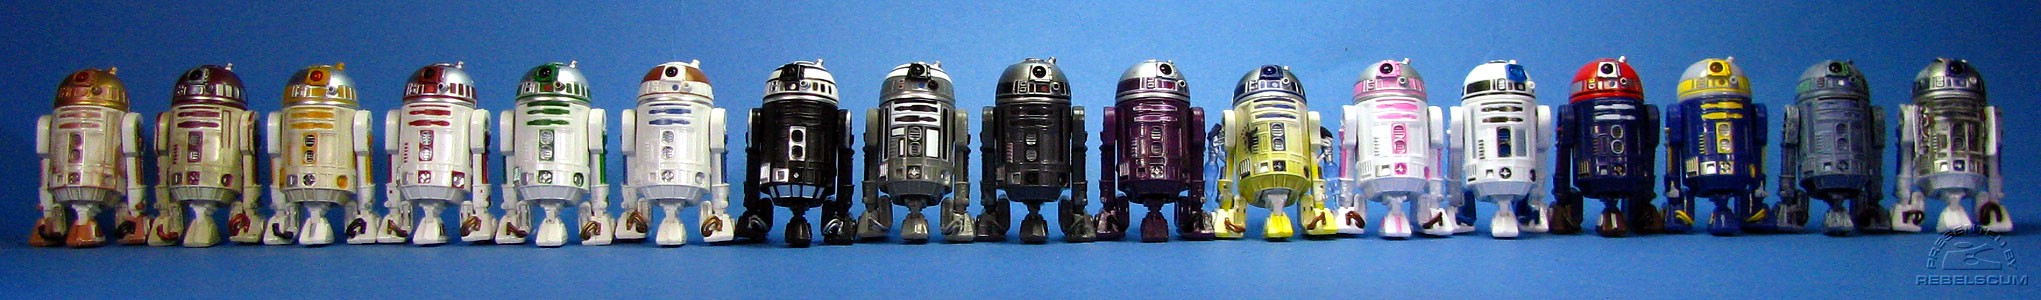 R4-G9 | R4-P17 | R2-C4 | R2-M5 | R2-A6 | R3-T2 | R2-X2 | R2-Q2 | R4-K5 | R4-M6 | R2-D2 | R2-KT | R2-D2 | Razor Astro | R2-B1 | R2-T0 | R2-D2